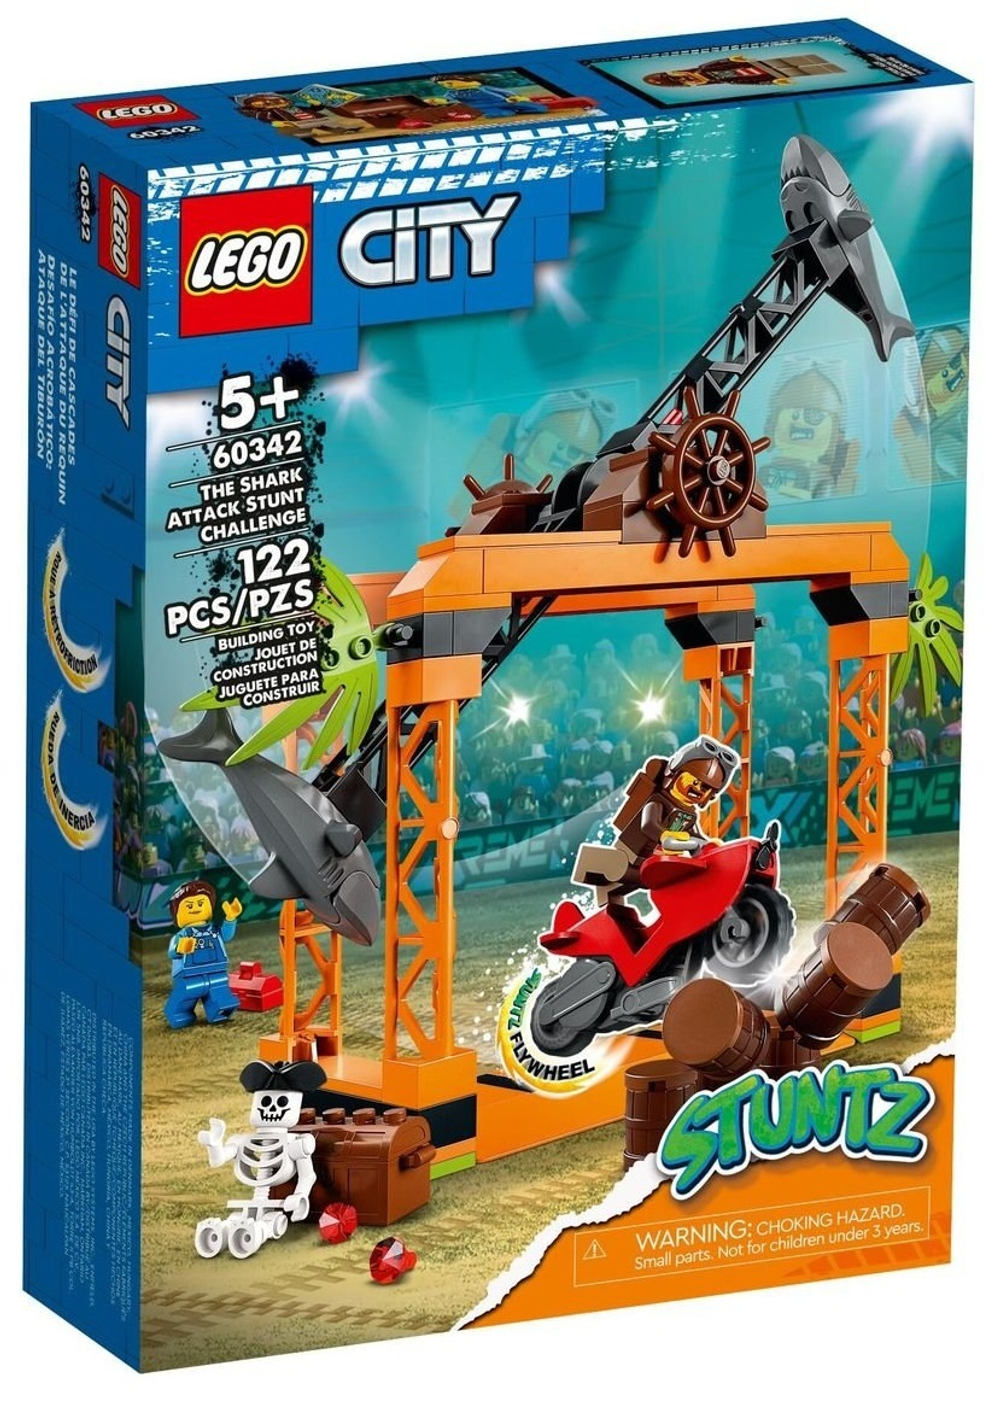 Конструктор LEGO City Stuntz Испытание трюков с нападением акул в городе | 60342